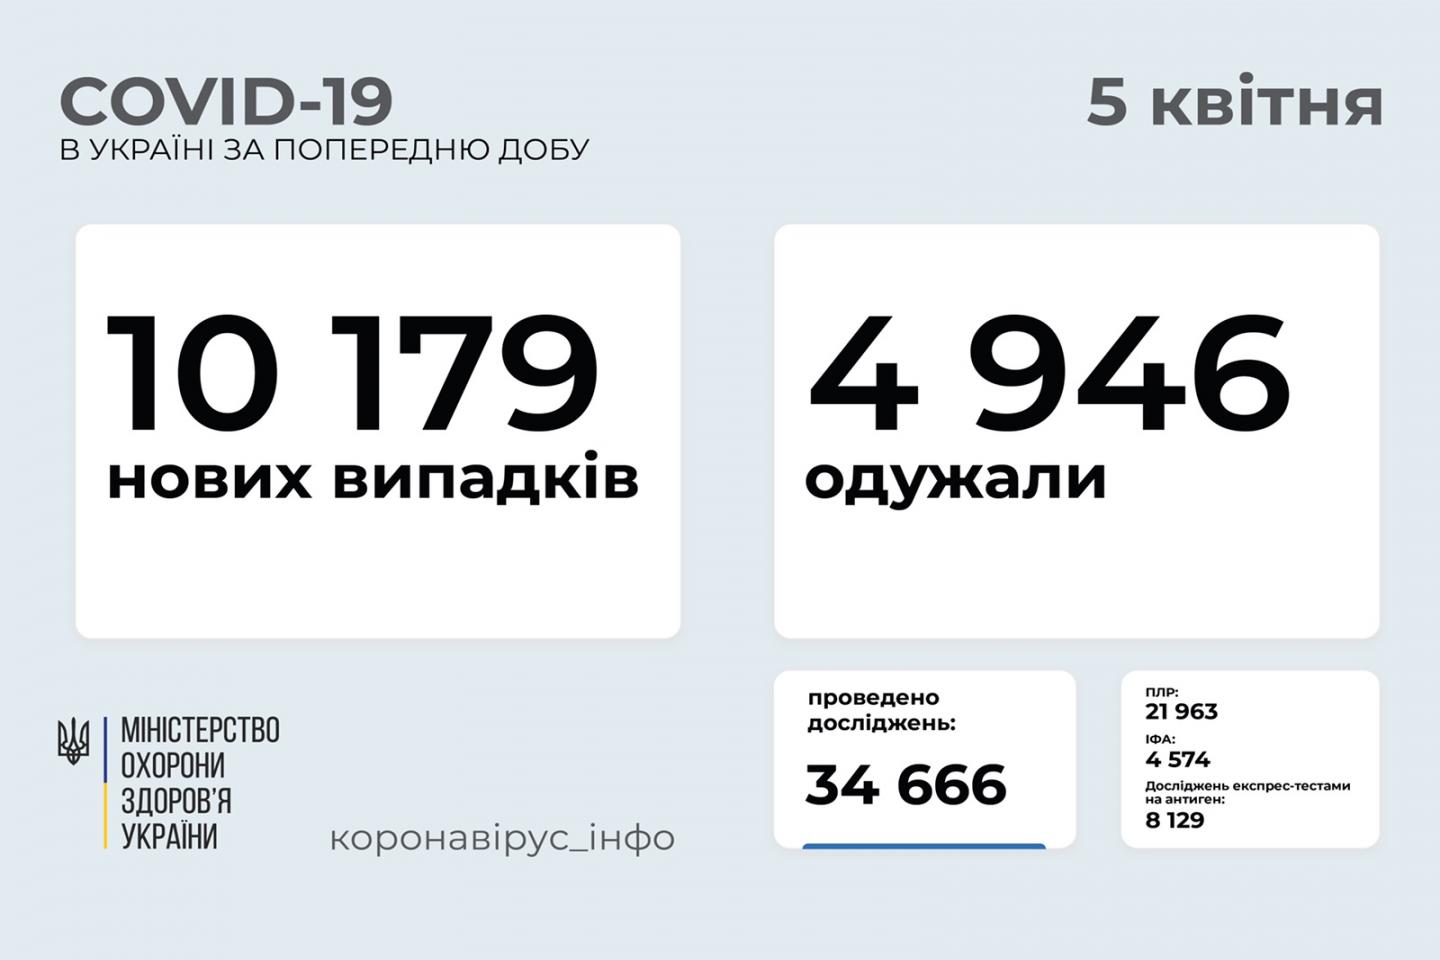 http://dunrada.gov.ua/uploadfile/archive_news/2021/04/05/2021-04-05_1207/images/images-35352.jpg